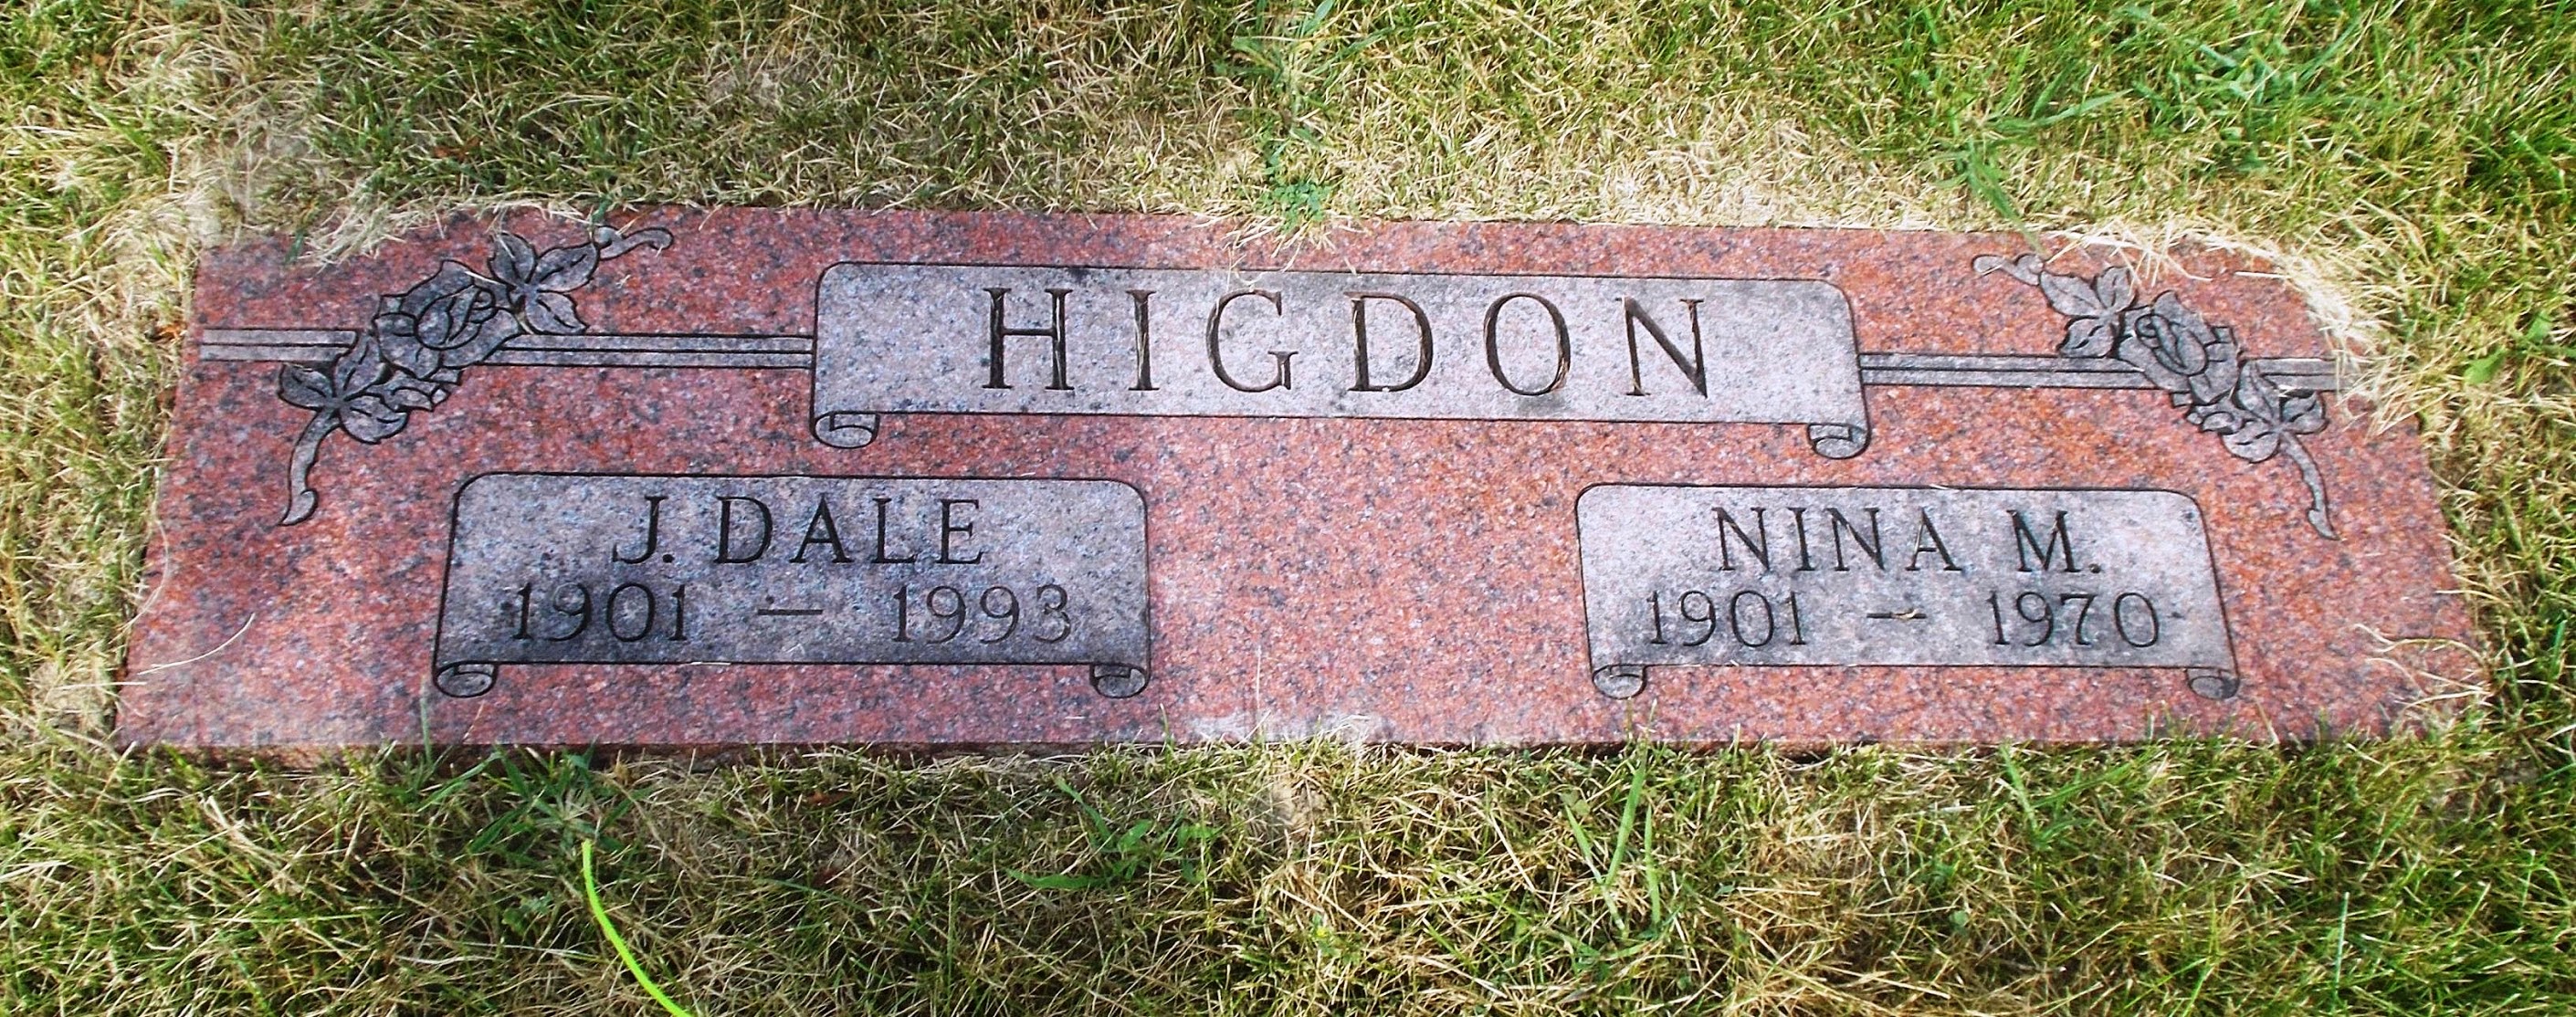 Nina M Higdon